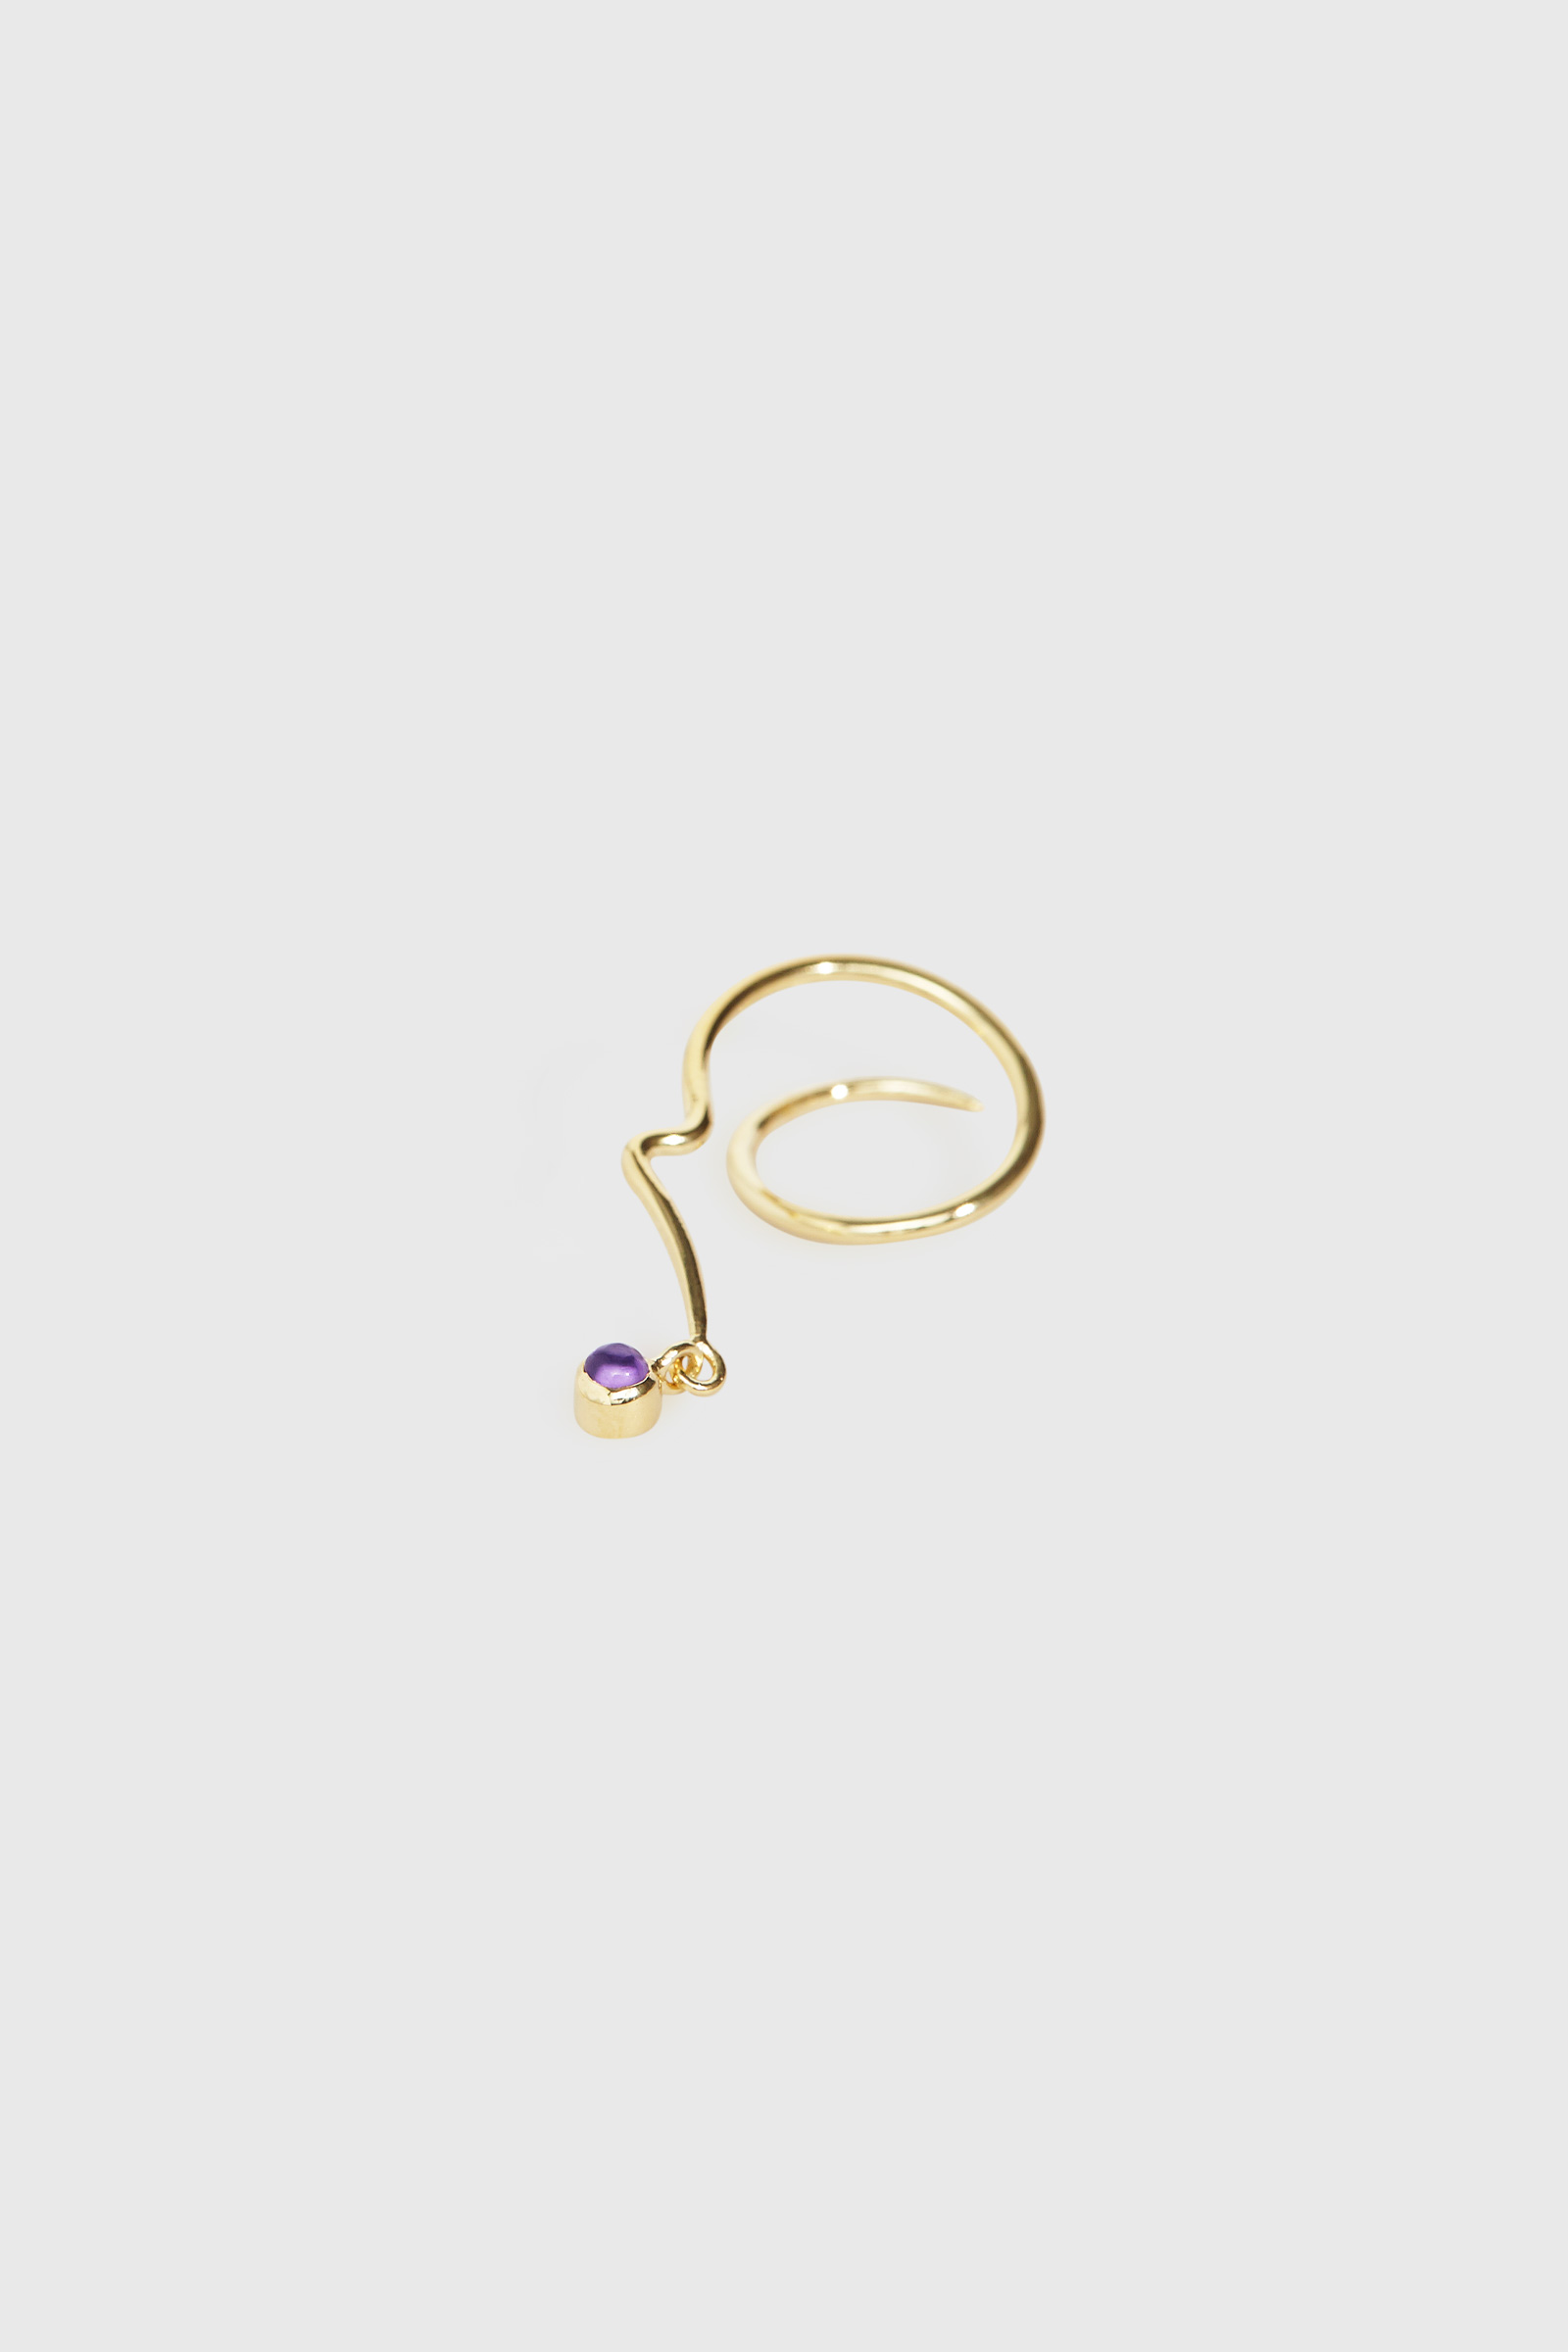 Trine Tuxen Jewelry - Spiral Earring III - 925 sterling silver